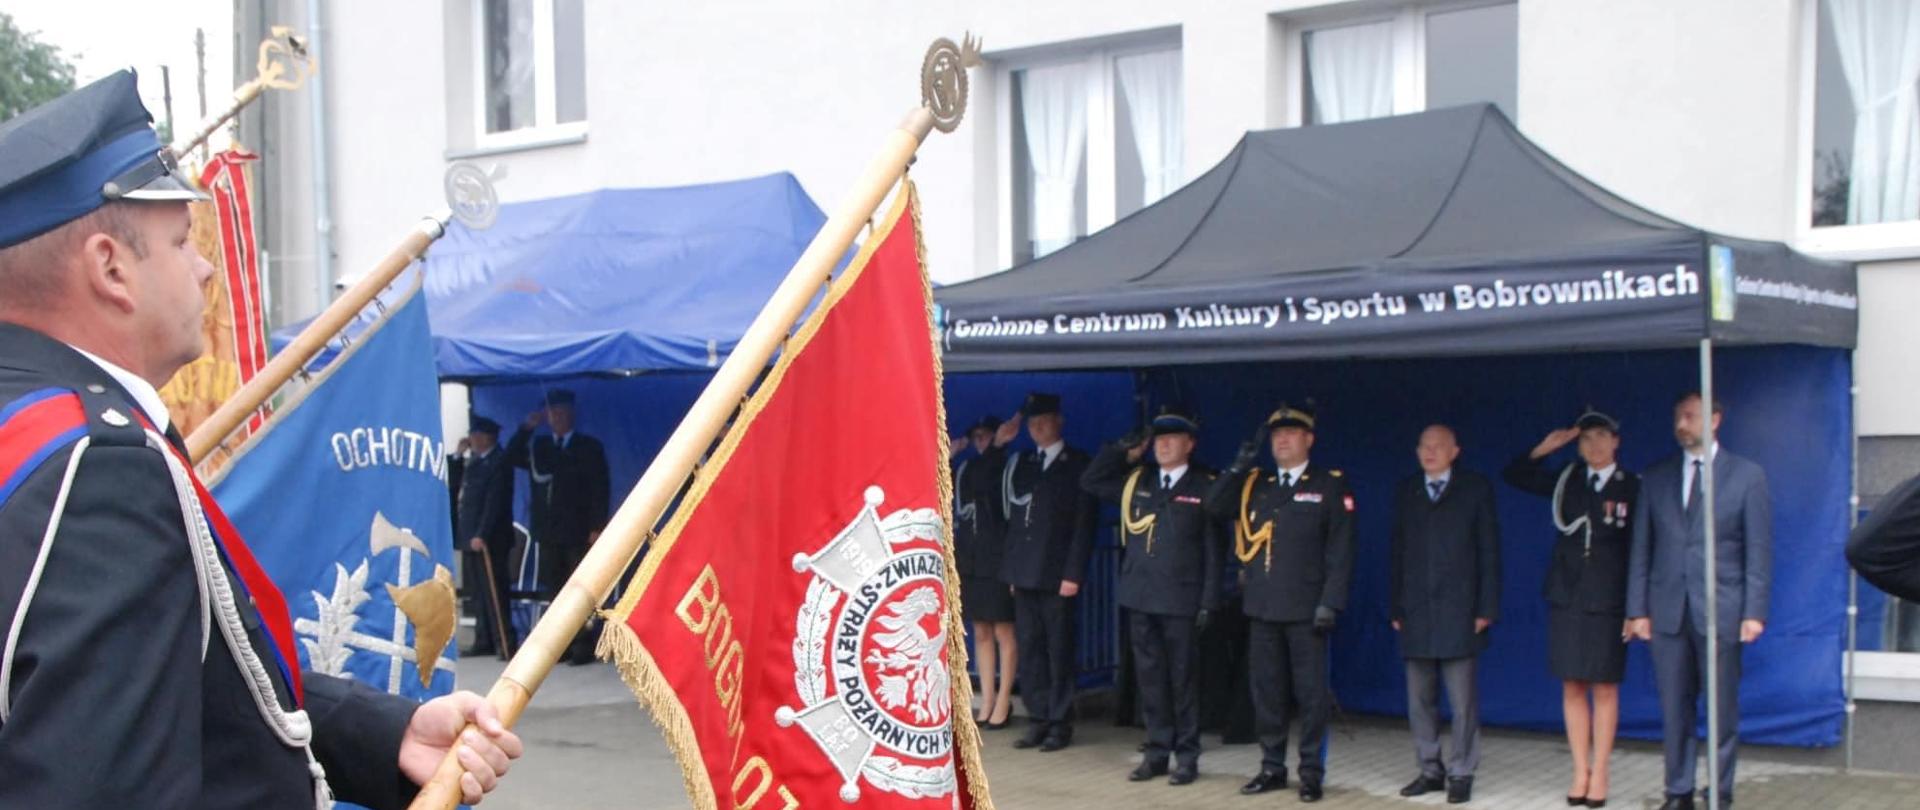 Zdjęcie przedstawia kadrę oddającą hołd sztandarowi Ochotniczej Straży Pożarnej w Myszkowicach